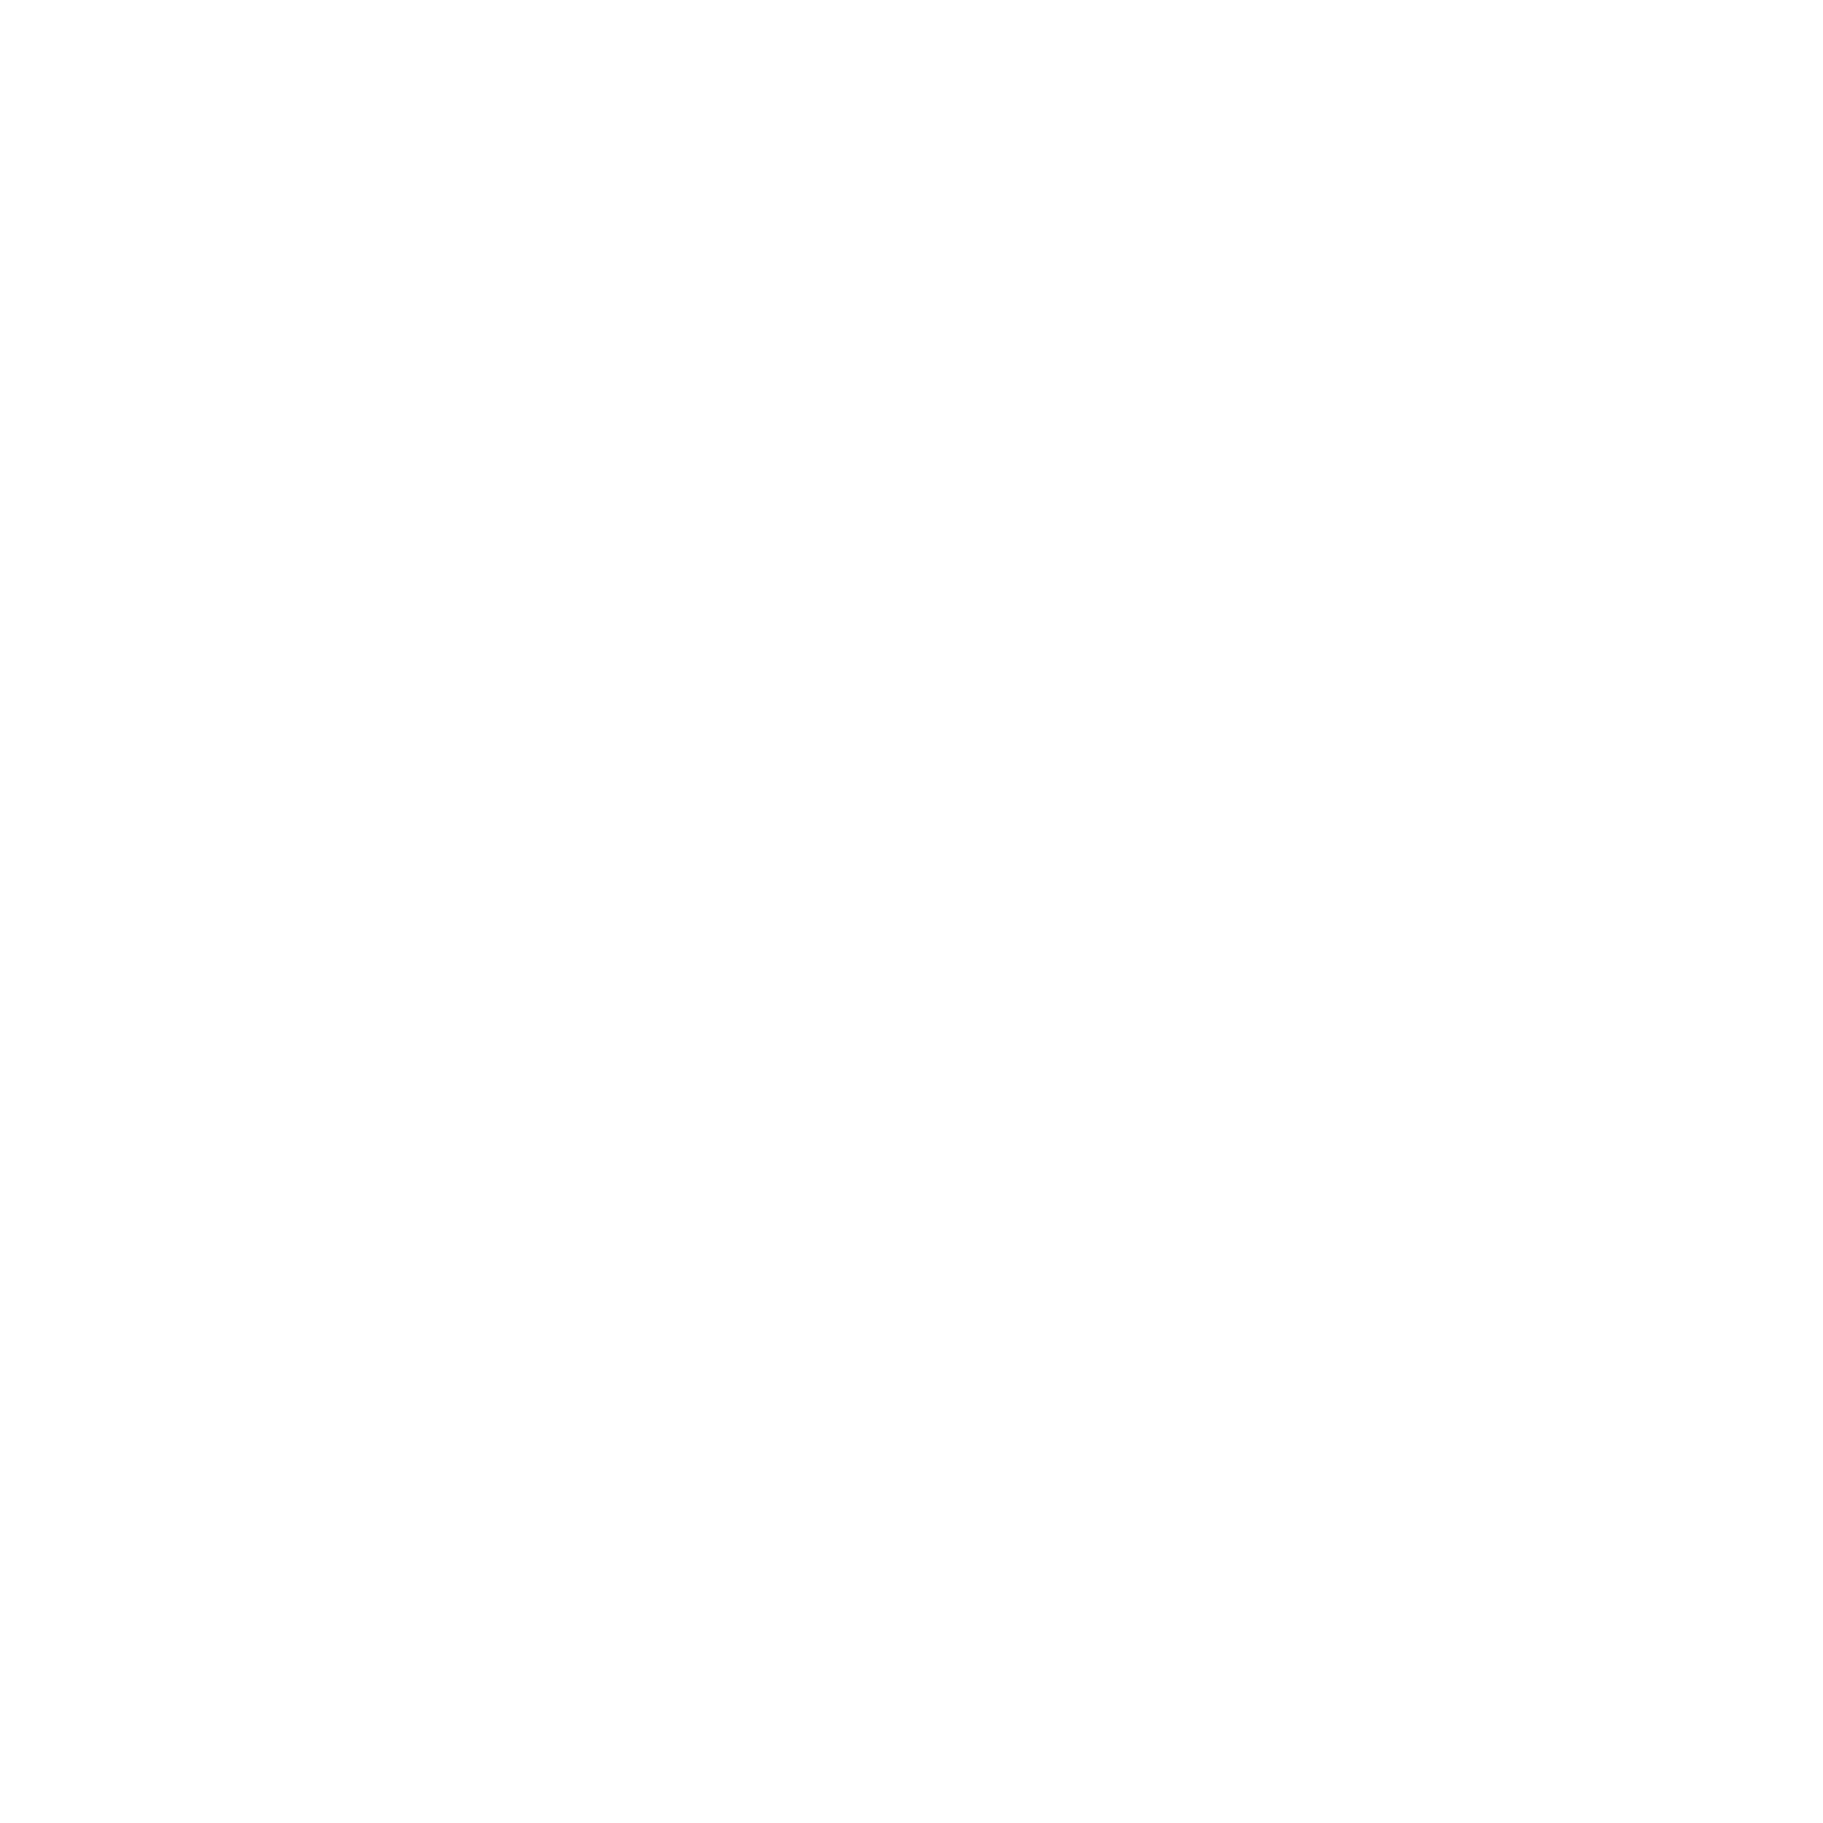 Rikki Jordan